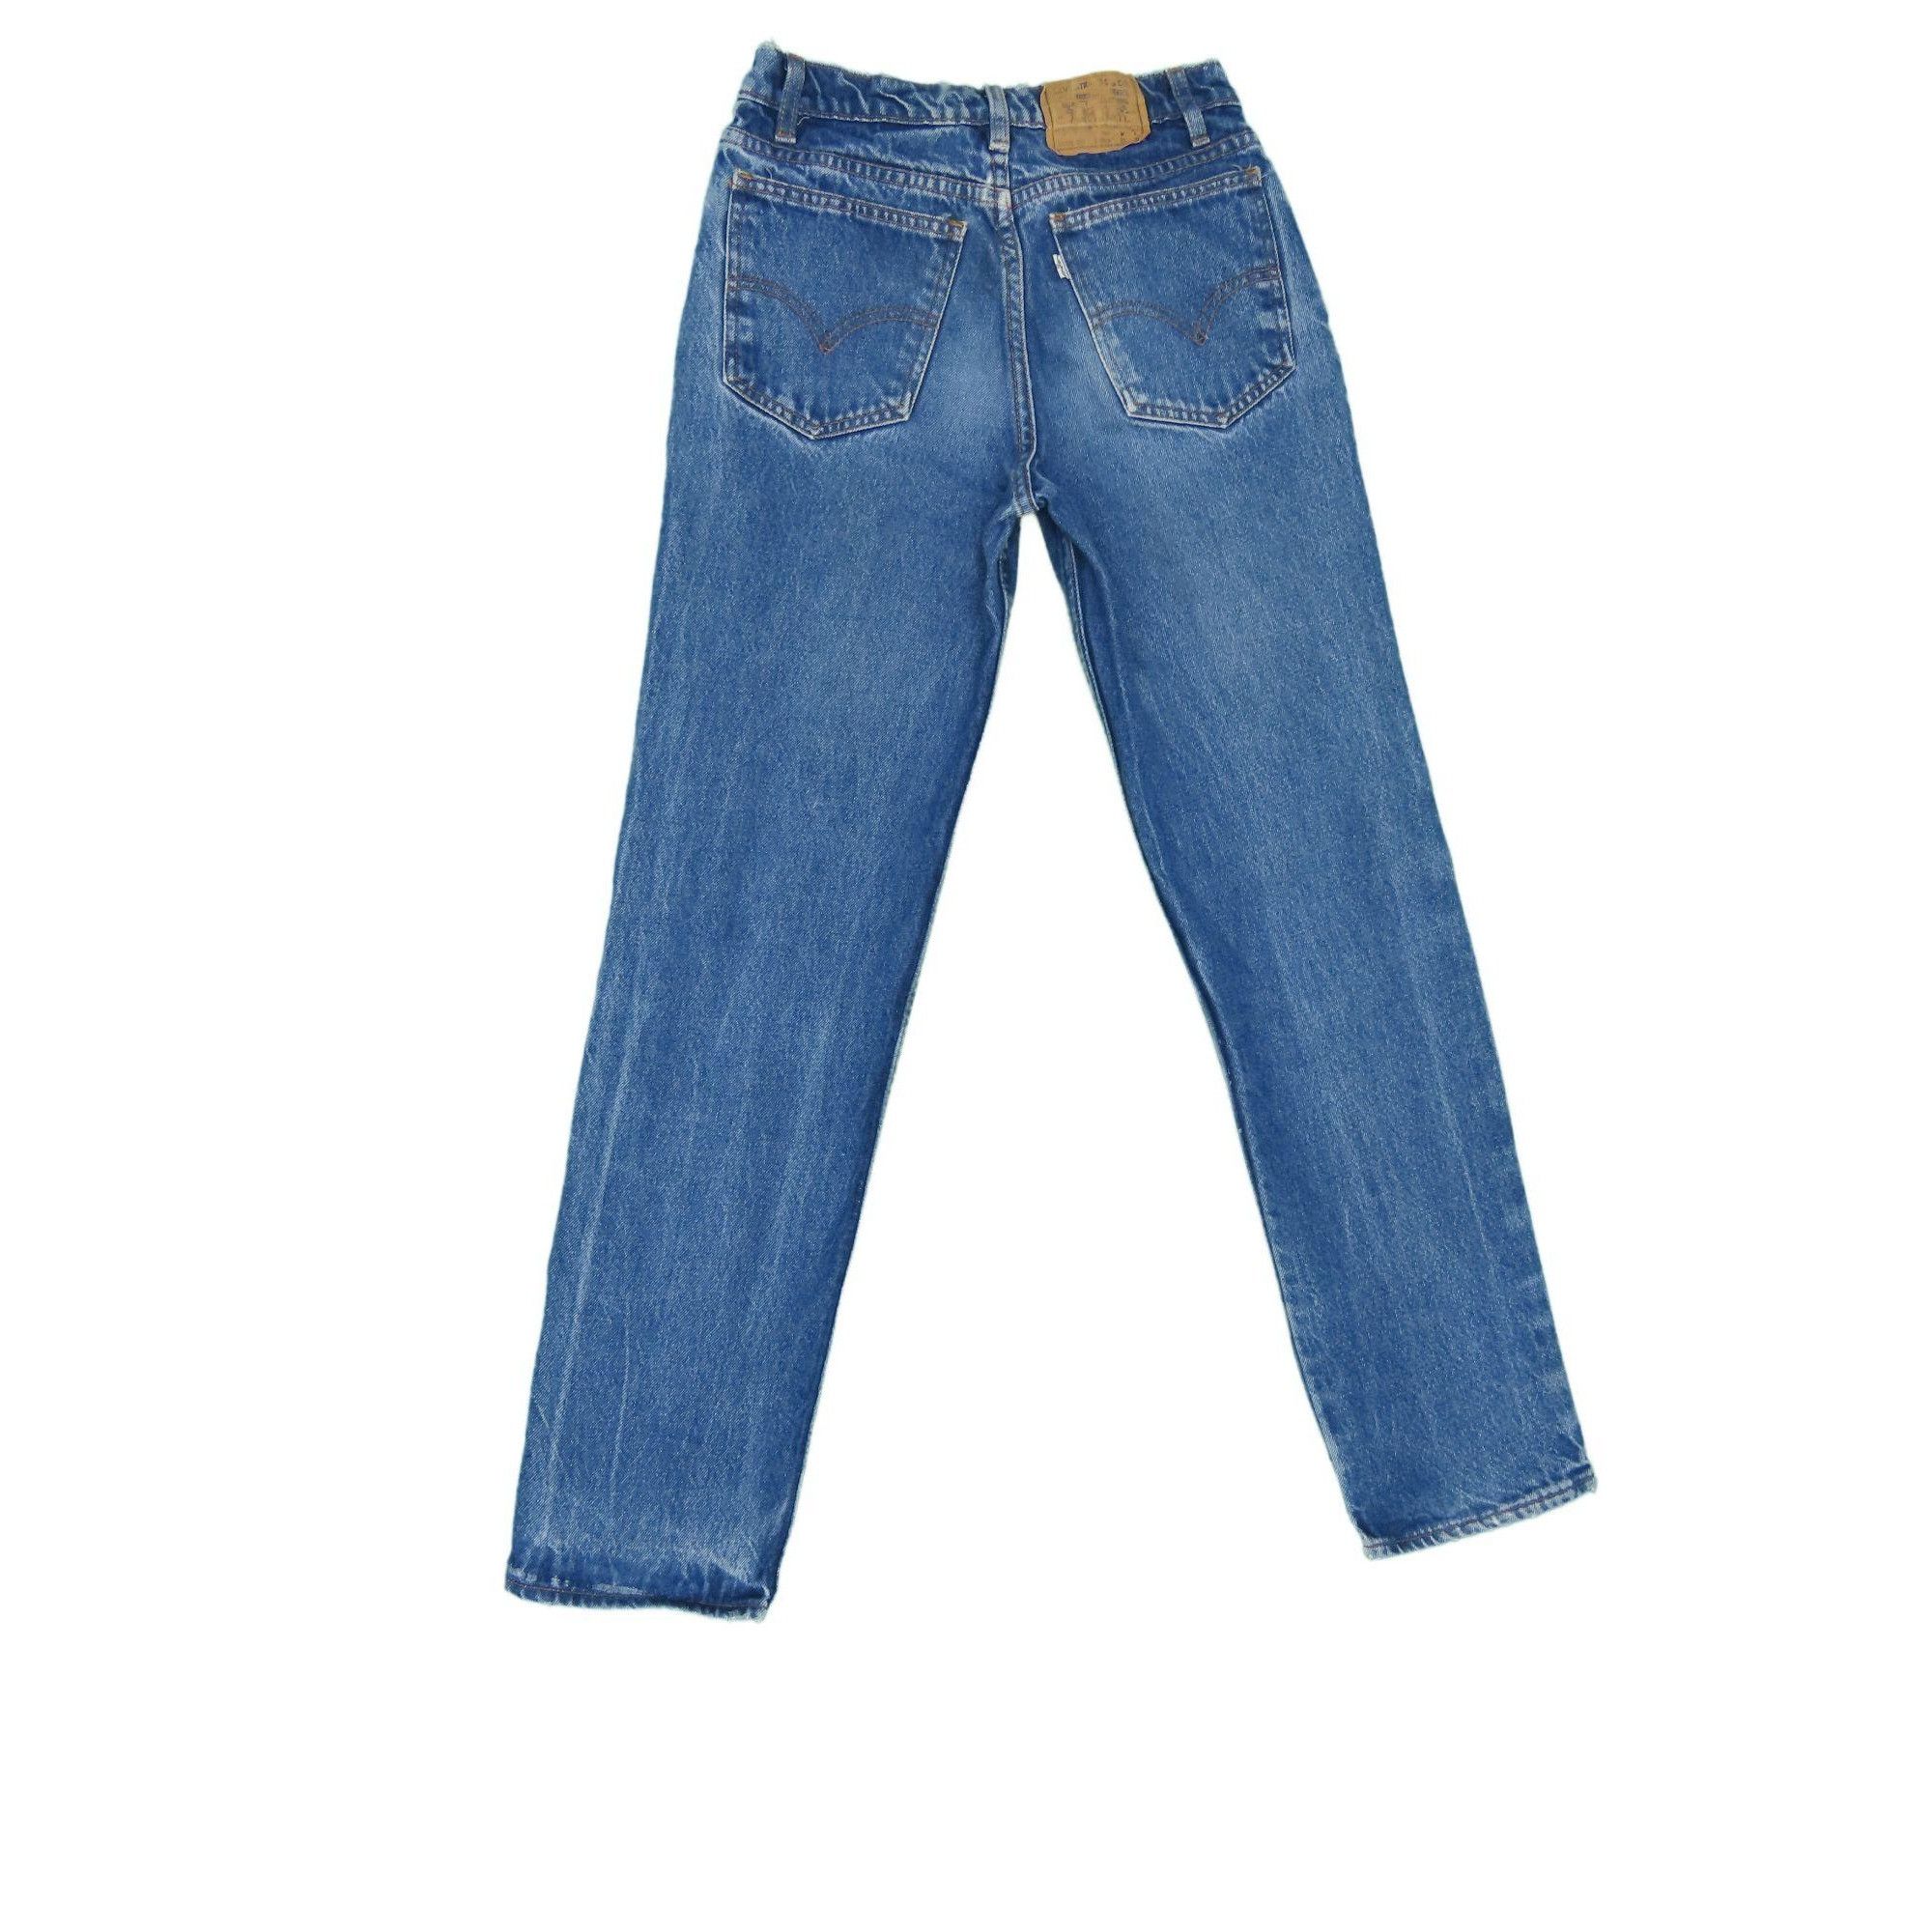 Vintage 1990s Vintage Levis 705 Jeans 26x29 Size US 26 / EU 42 - 2 Preview